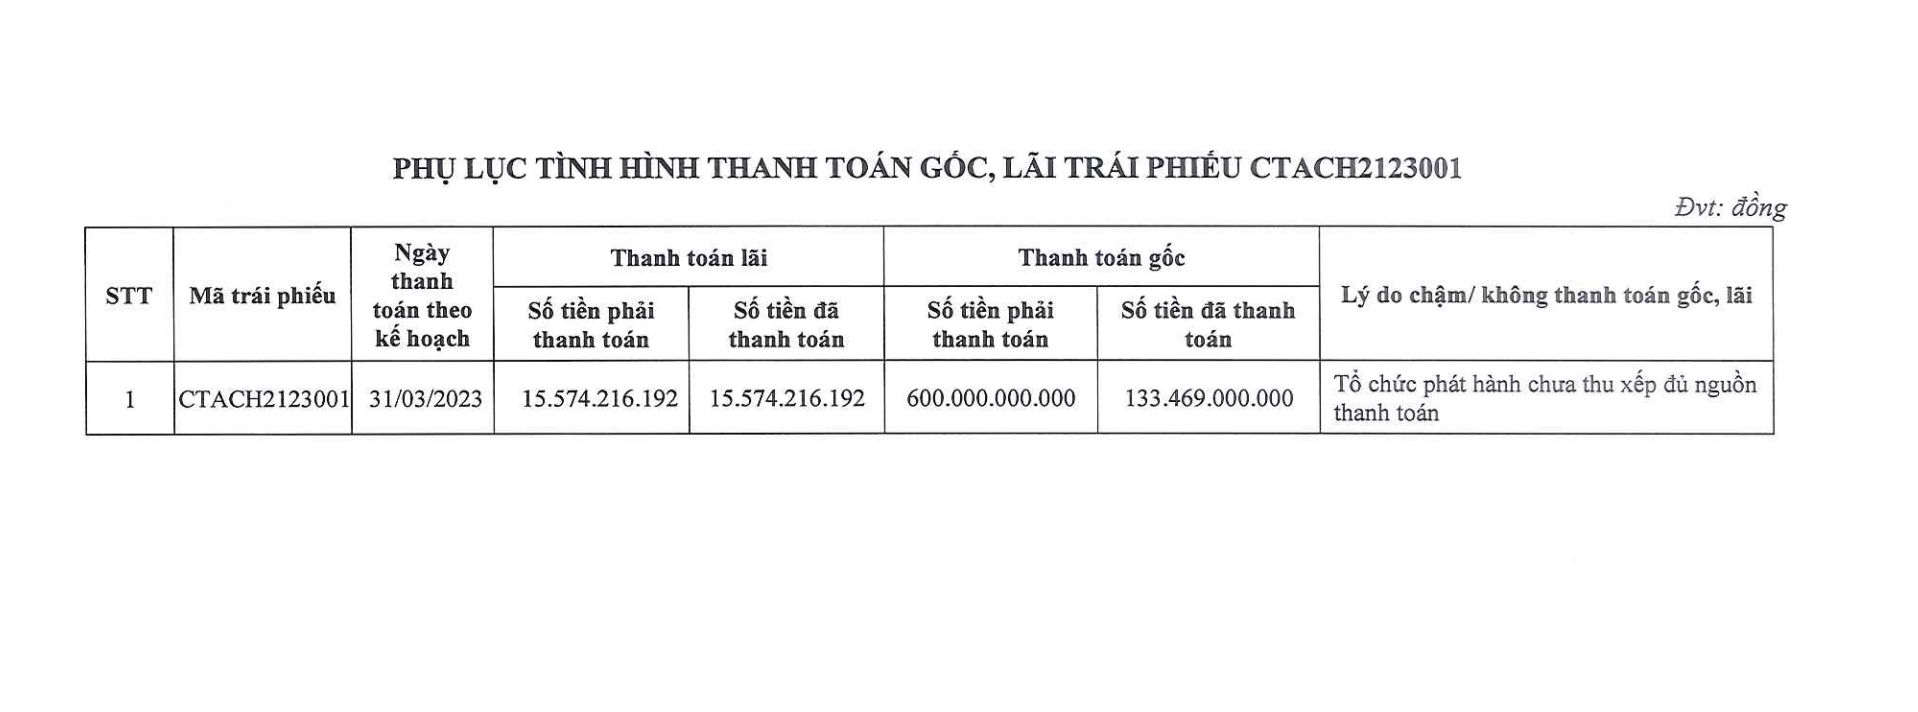 Công ty do ông Lê Thống Nhất giữ chức vụ Chủ tịch HĐQT chậm thanh toán trái phiếu. Ảnh: Chụp màn hình.